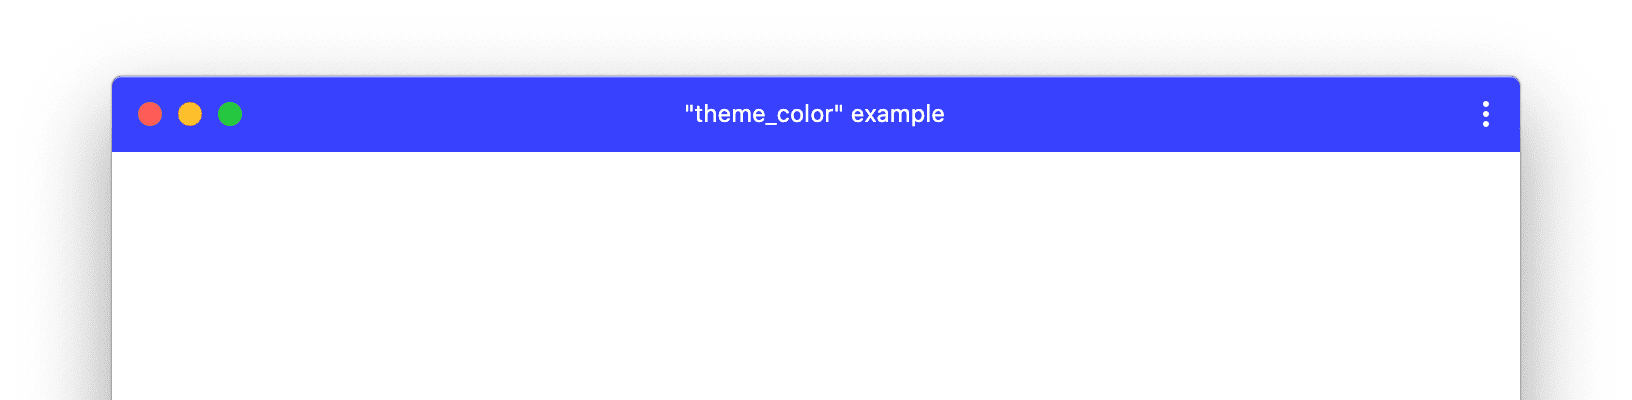 採用自訂 theme_color 的 PWA 視窗範例。